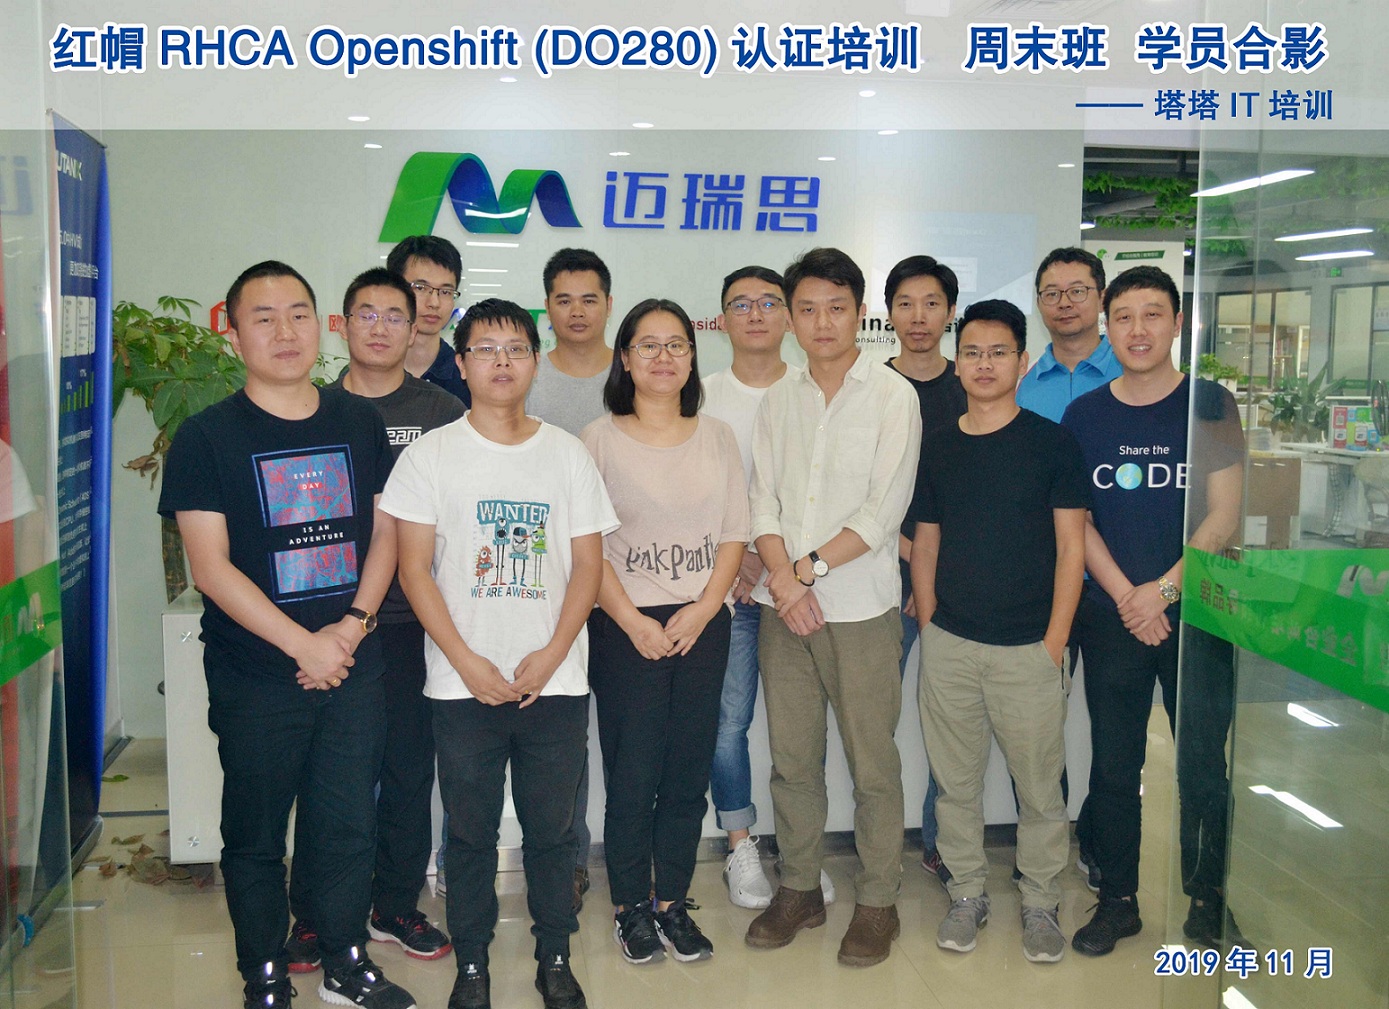 2019年11月红帽RHCA Opensshift（DO280）认证培训合影